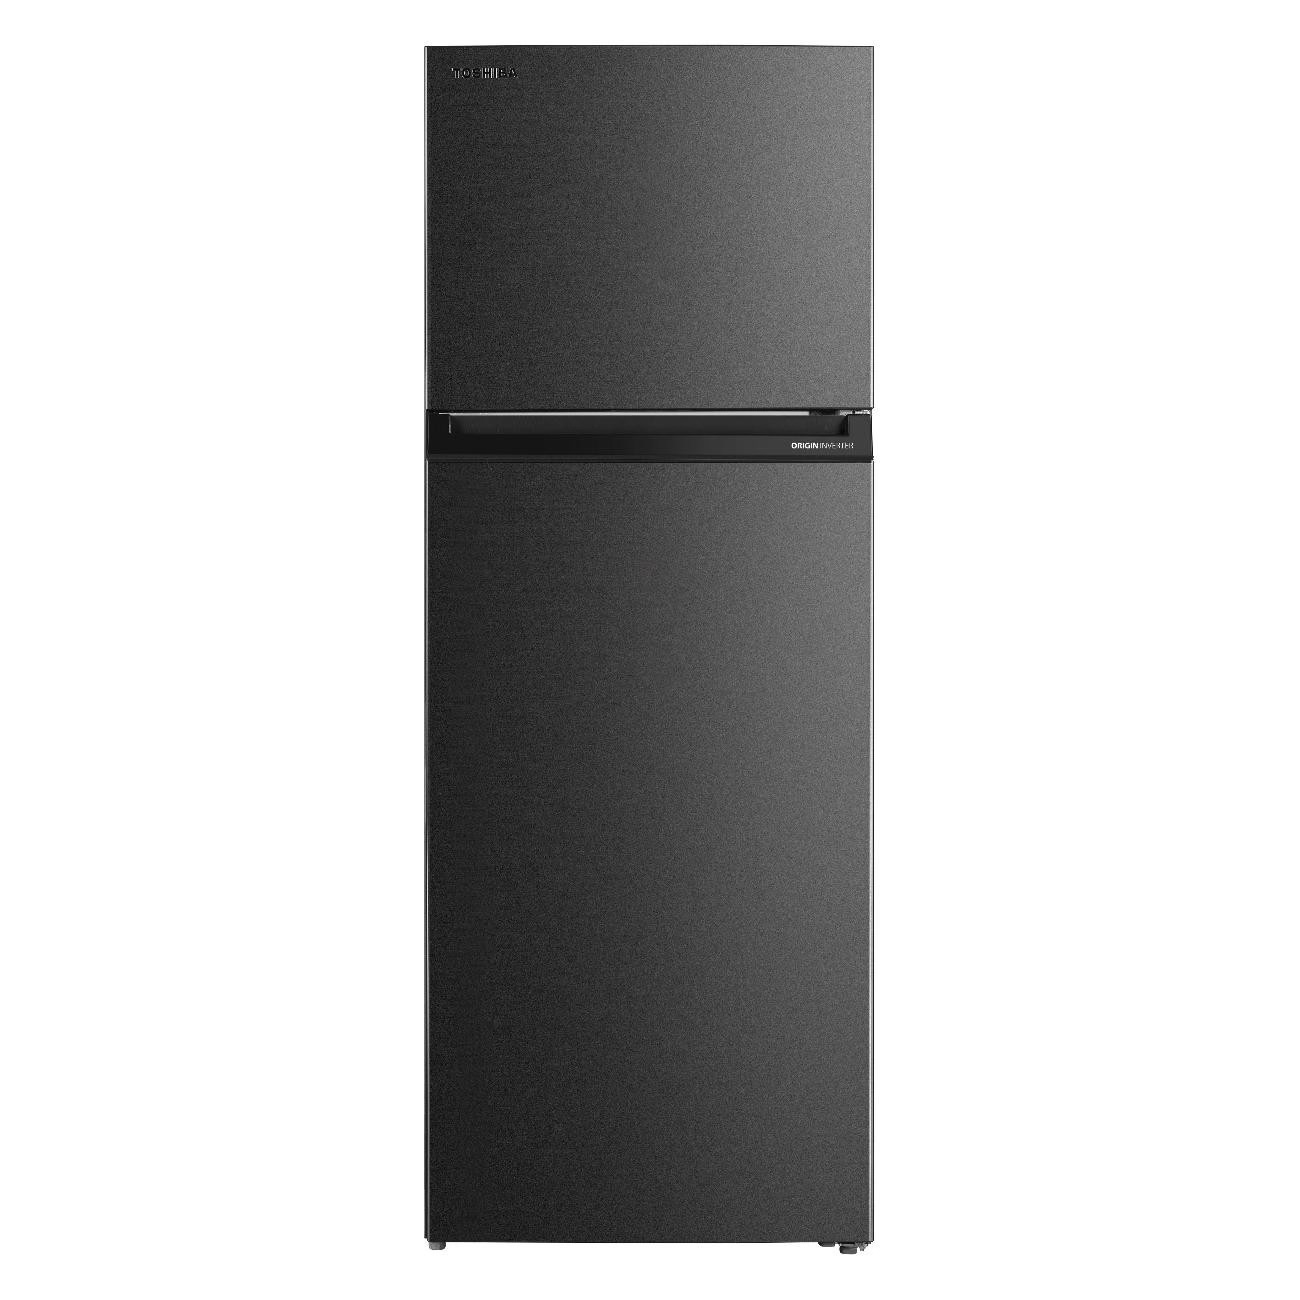 Холодильник Toshiba GR-RT624WE-PMJ(06) серый холодильник toshiba gr rb449we pmj серый